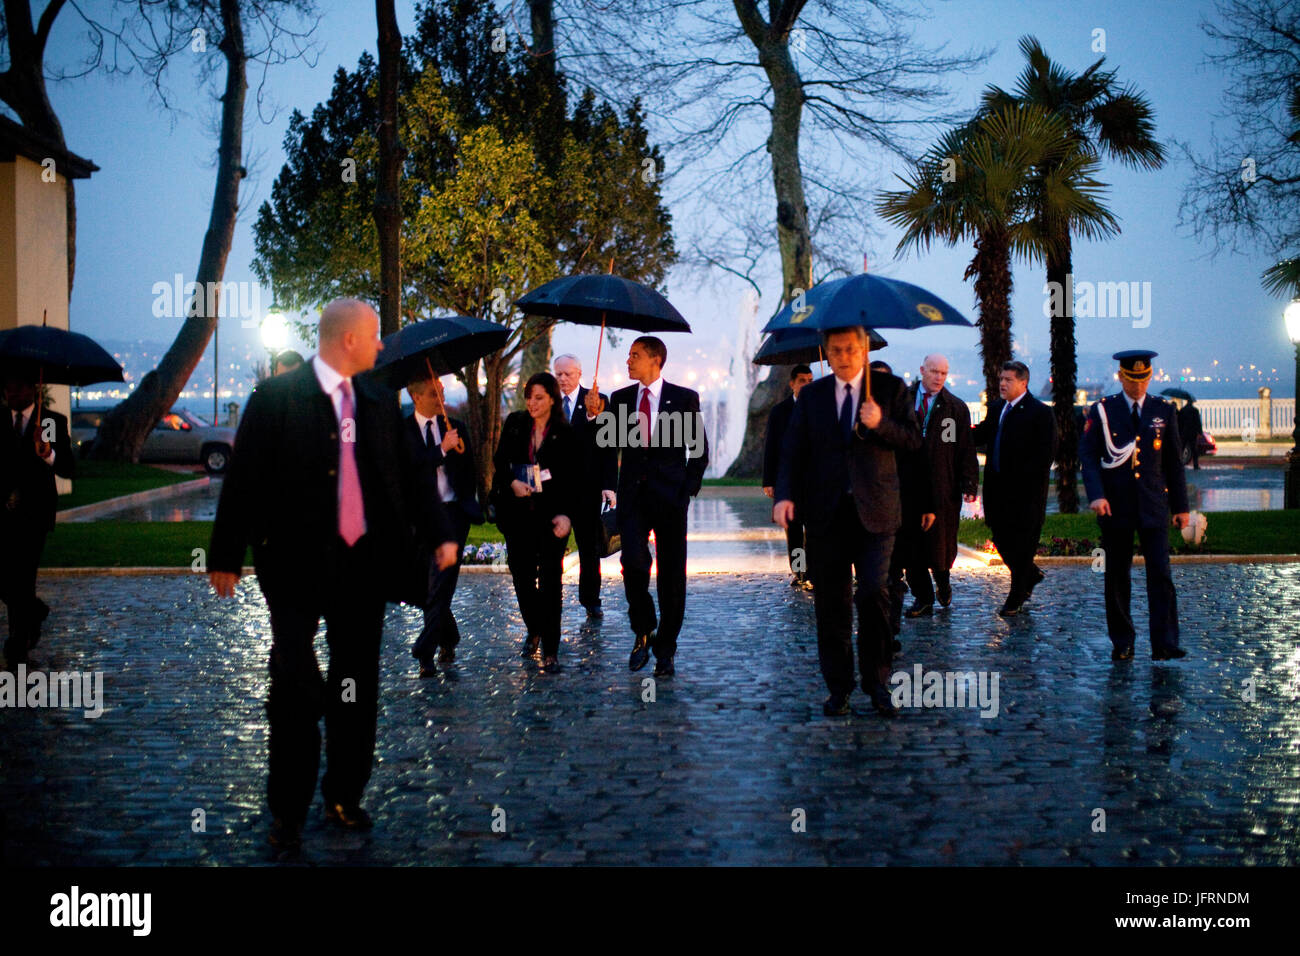 Le président Barack Obama et les membres de son personnel arrive pour une réception le 6 avril 2009, au palais de Dolmabahçe, à Istanbul. Photo Officiel de la Maison Blanche par Pete Souza Banque D'Images